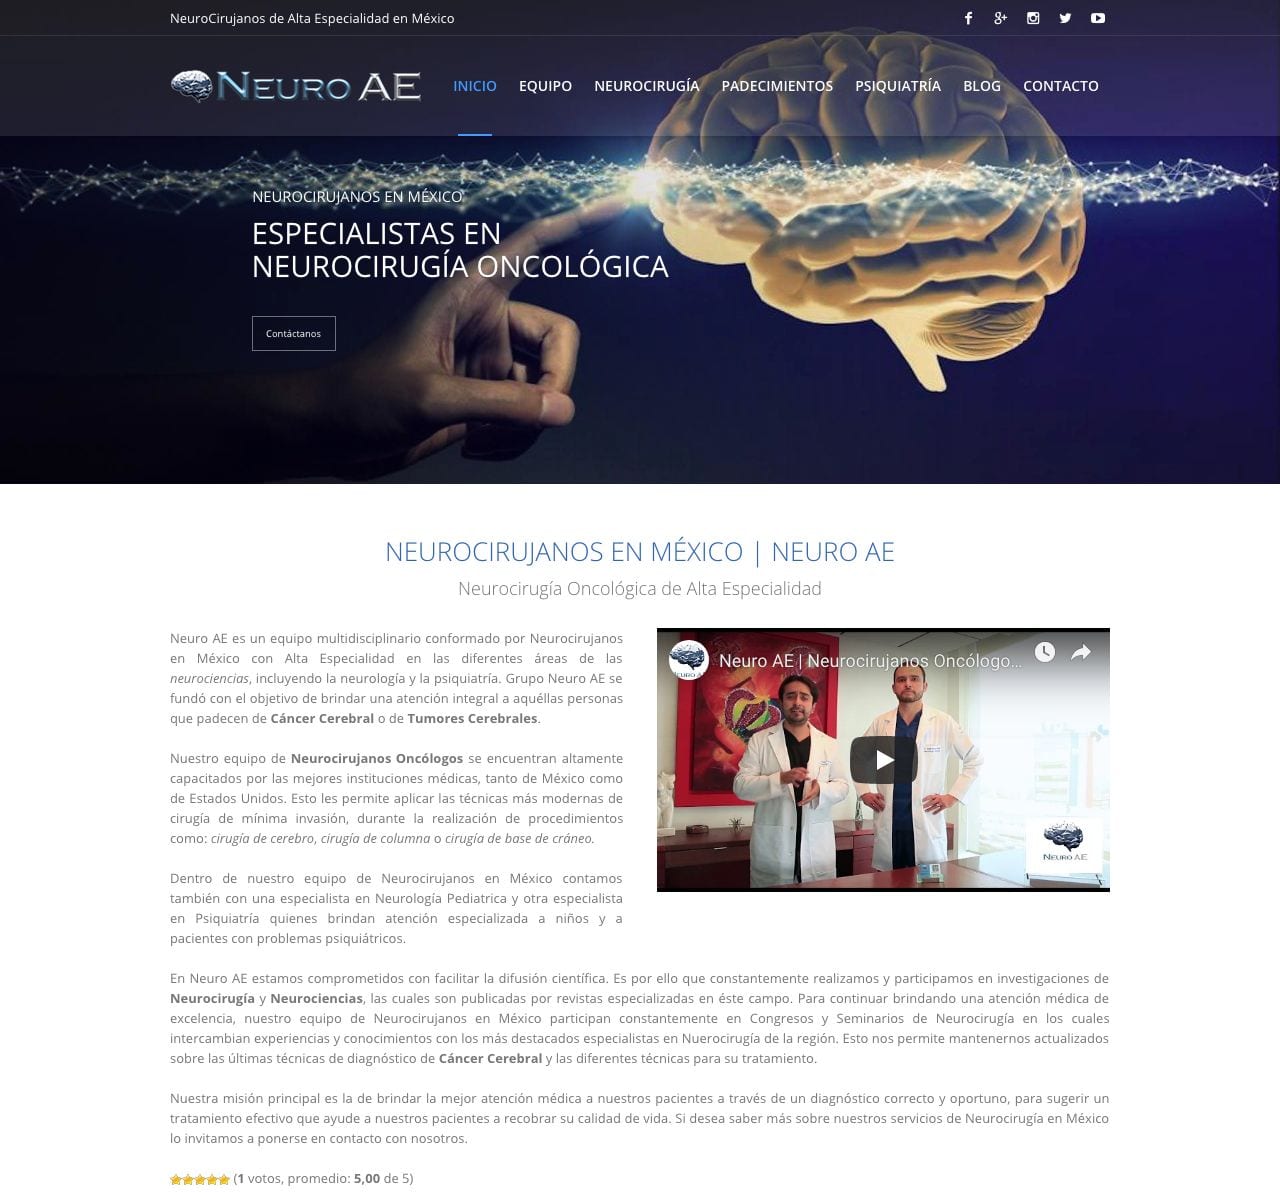 Neurocirujanos-en-Mexico-Especialistas-en-Neurocirugia-Oncologica-Grupo-NeuroAE